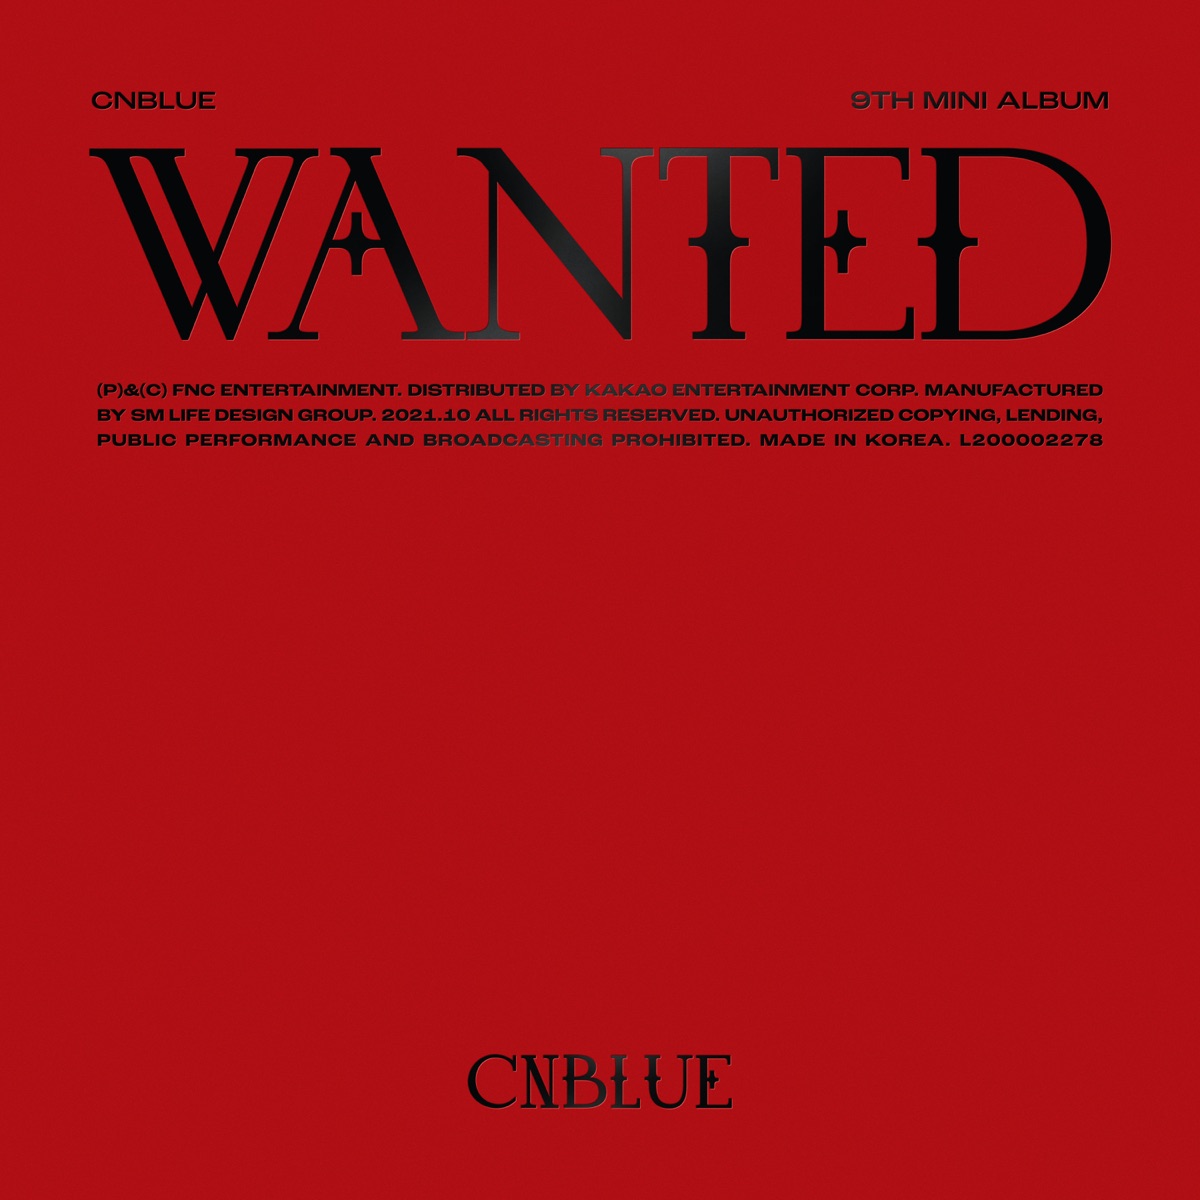 『CNBLUE - 99% 歌詞』収録の『WANTED』ジャケット